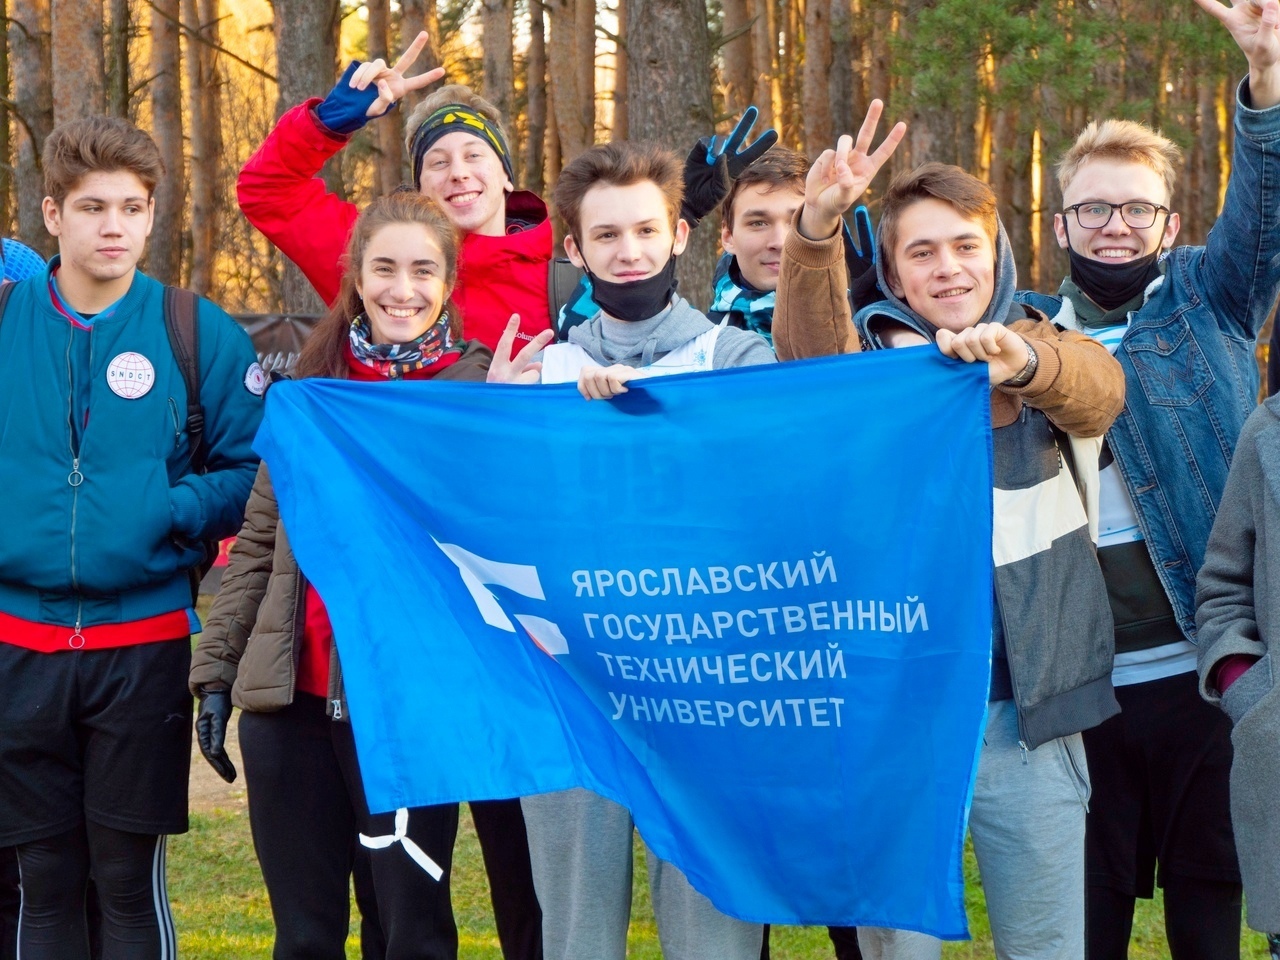 В Ярославской области работают более 650 физкультурно-спортивных клубов по месту жительства, обучения и работы